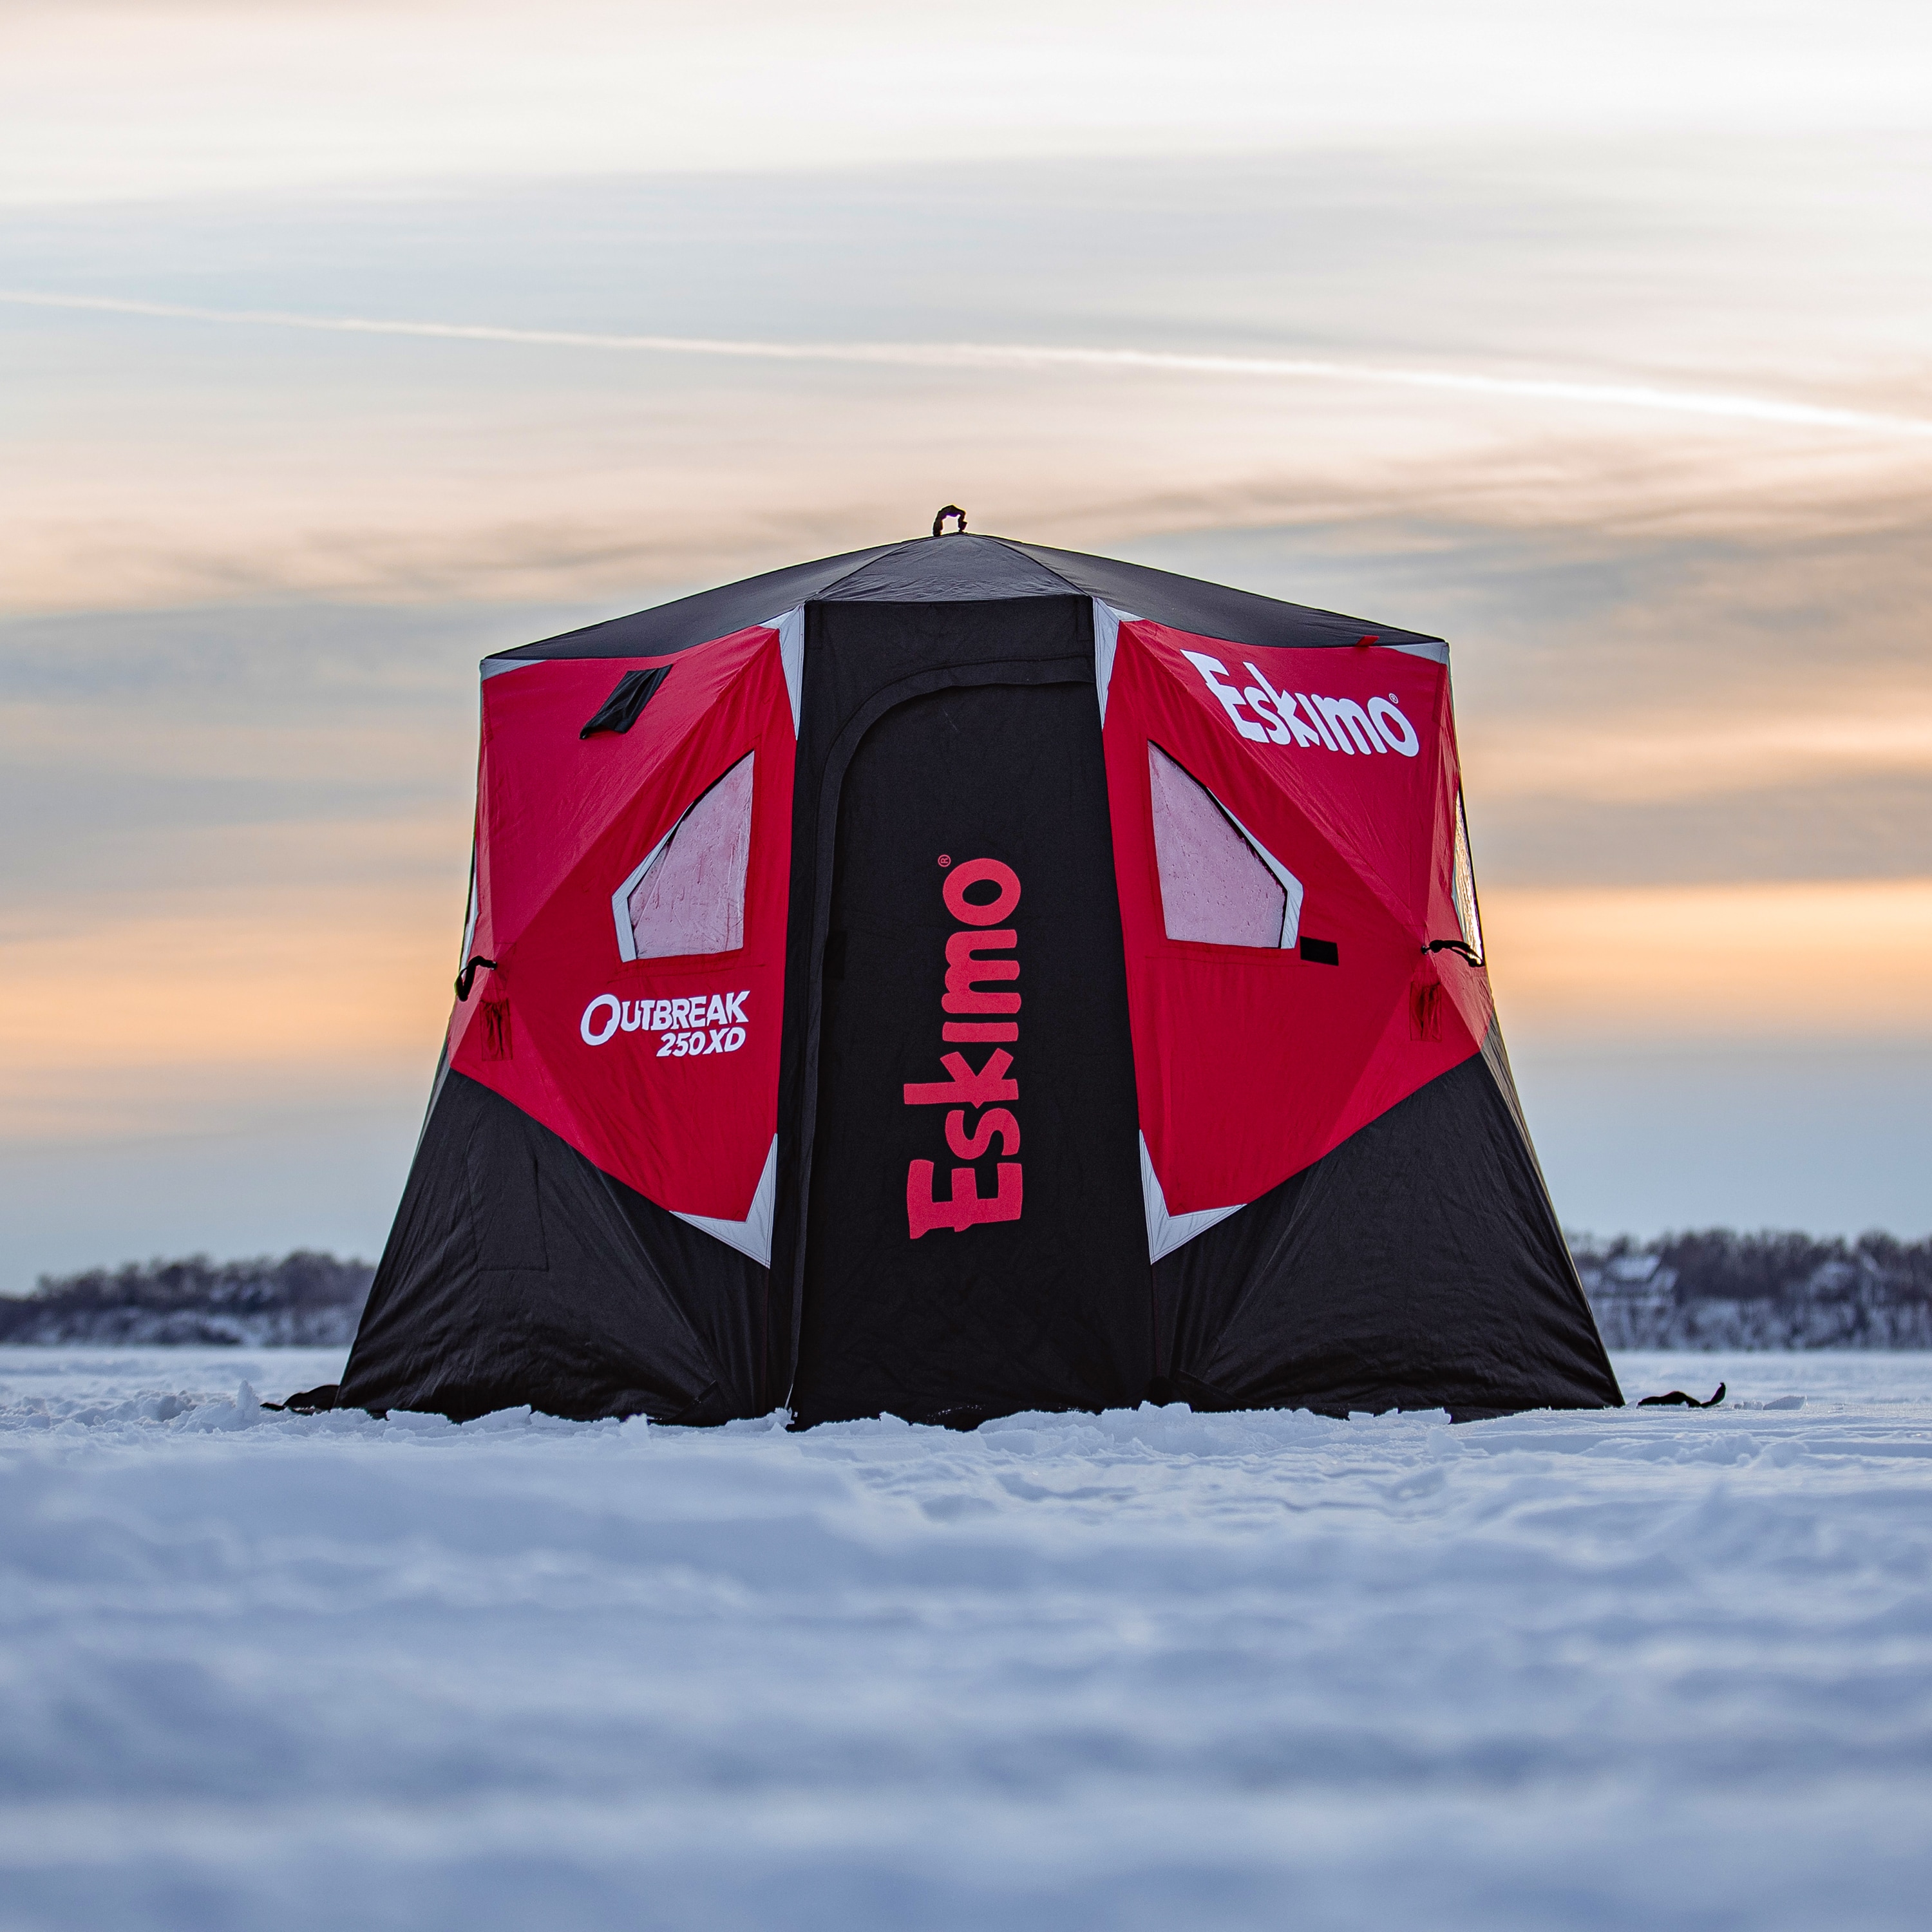 Eskimo Outbreak 250XD Portable Ice Shelter Fishing Storage Cabinet